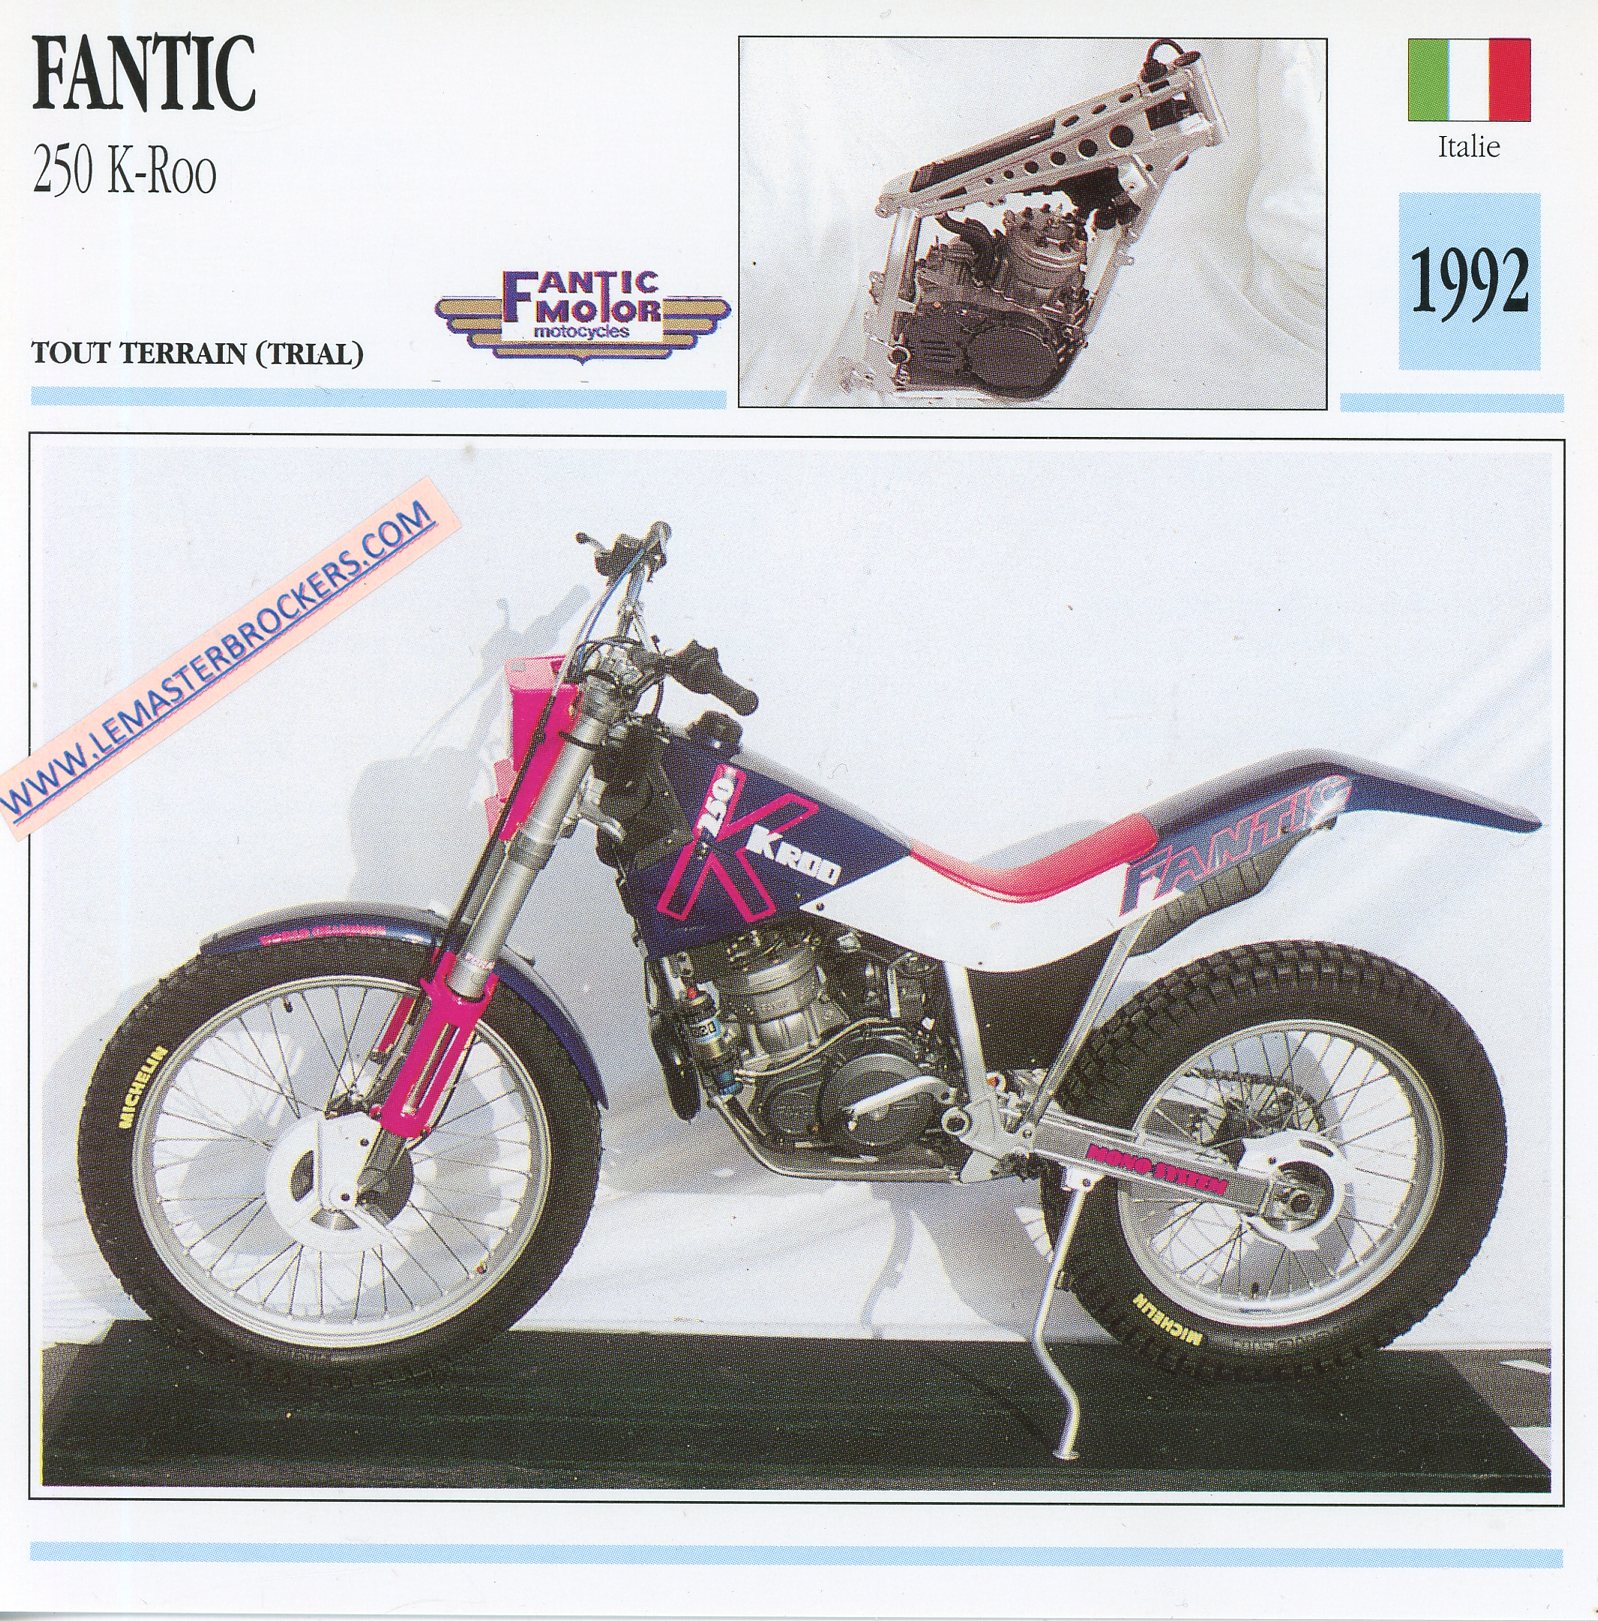 FICHE-moto-trial-fantic-250-k-roo-kroo-1992-LEMASTERBROCKERS